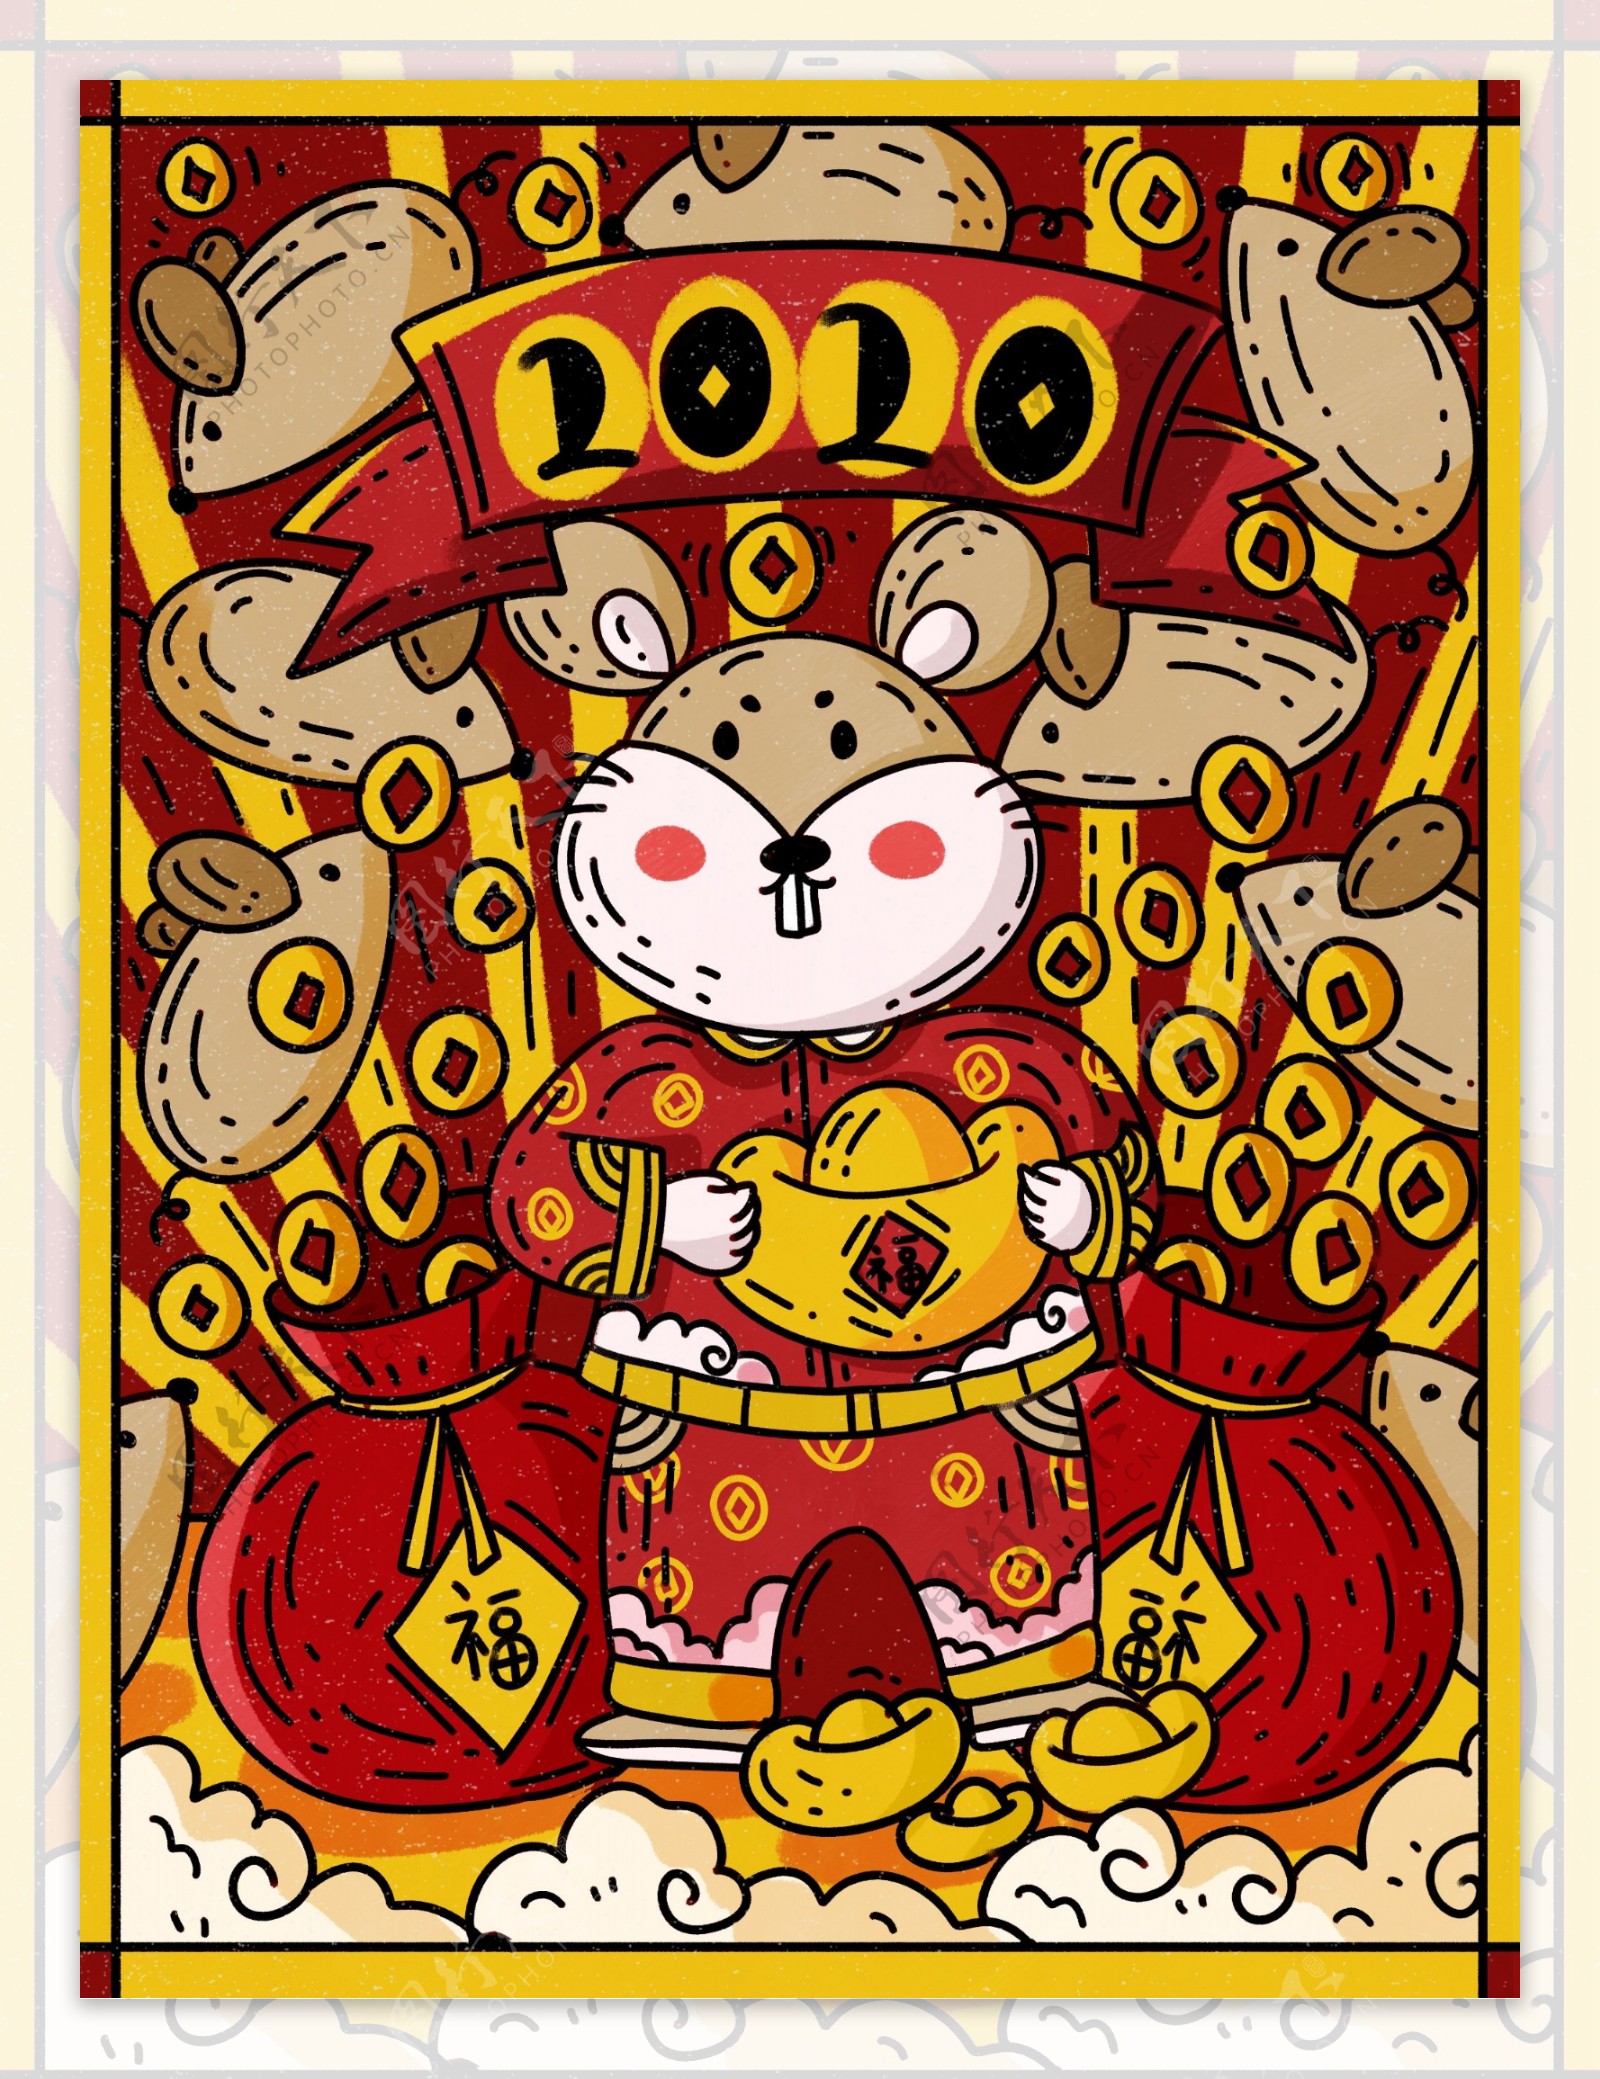 新年好鼠年快乐2020年红包金币满天飞